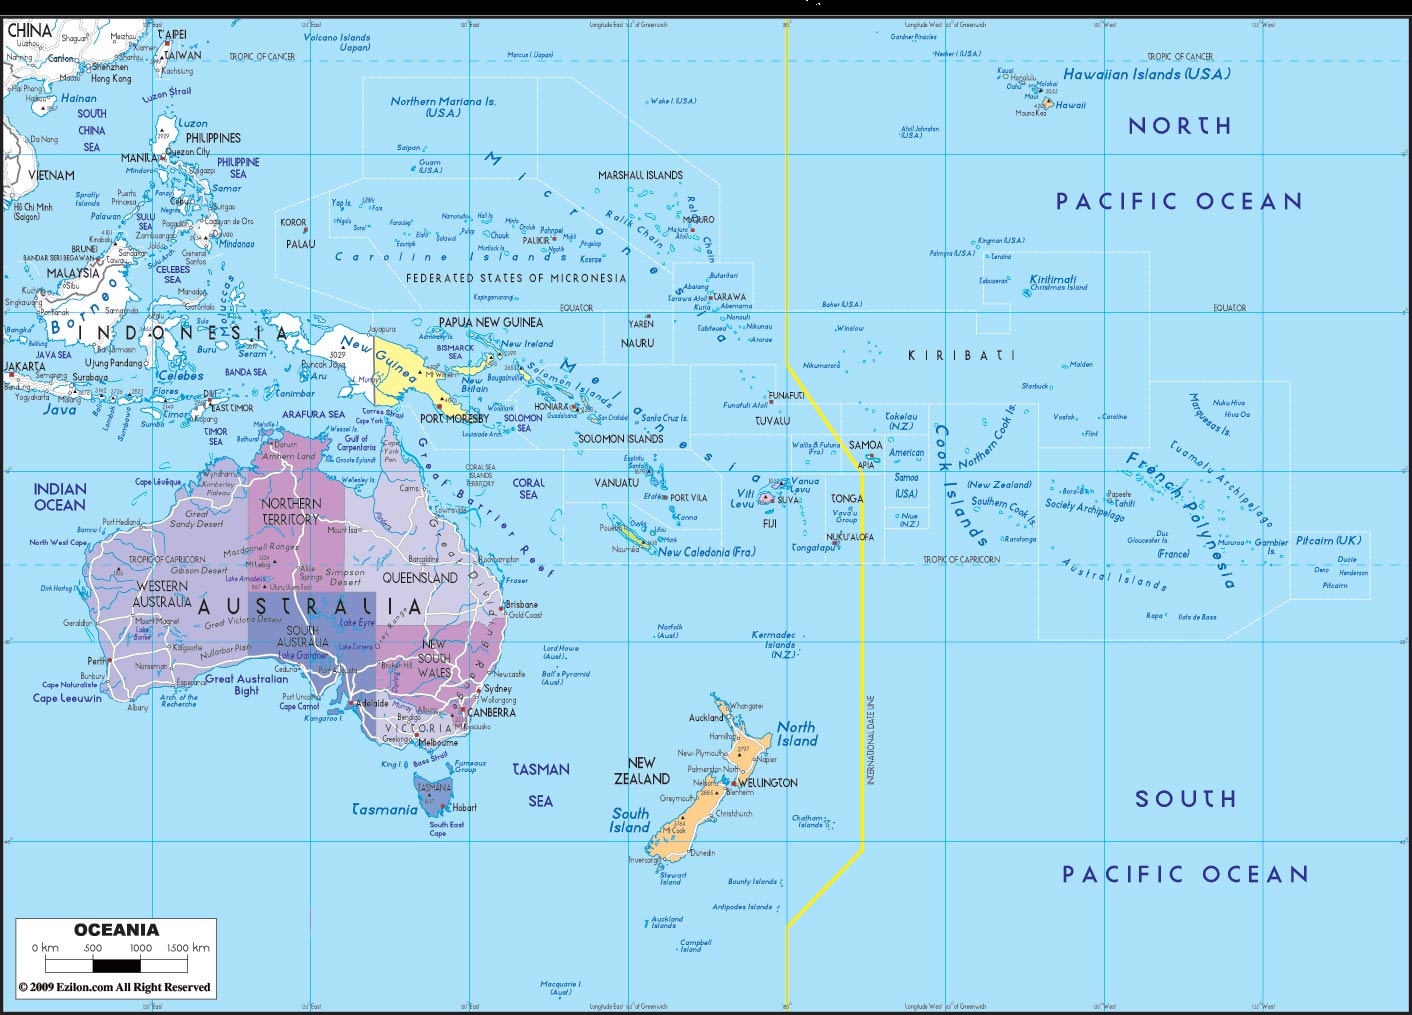 关于新几内亚:新几内亚岛-百度百科